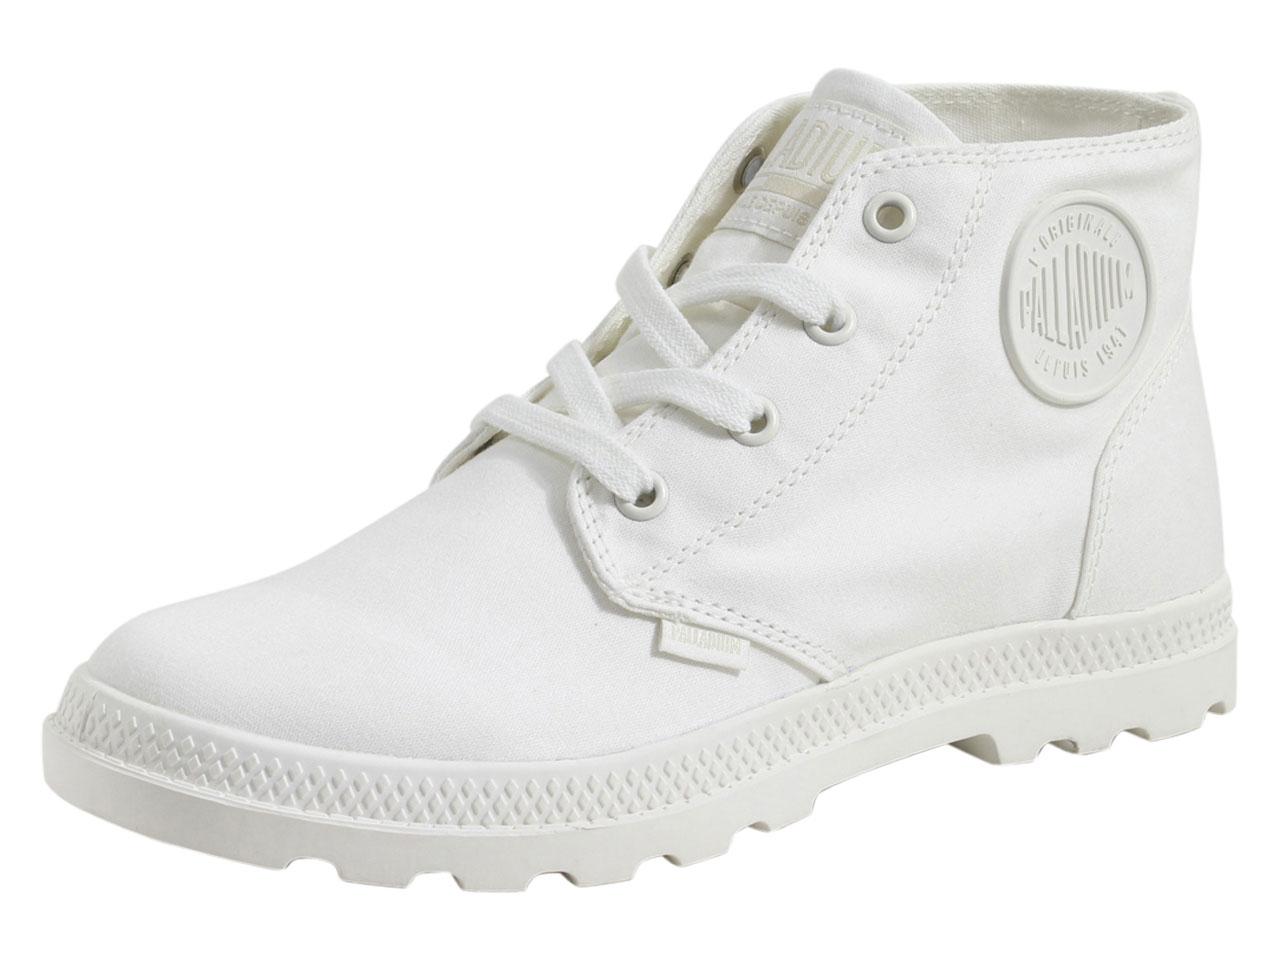 Palladium Women's Pampa Free Canvas Boots Shoes - White - 9 B(M) US